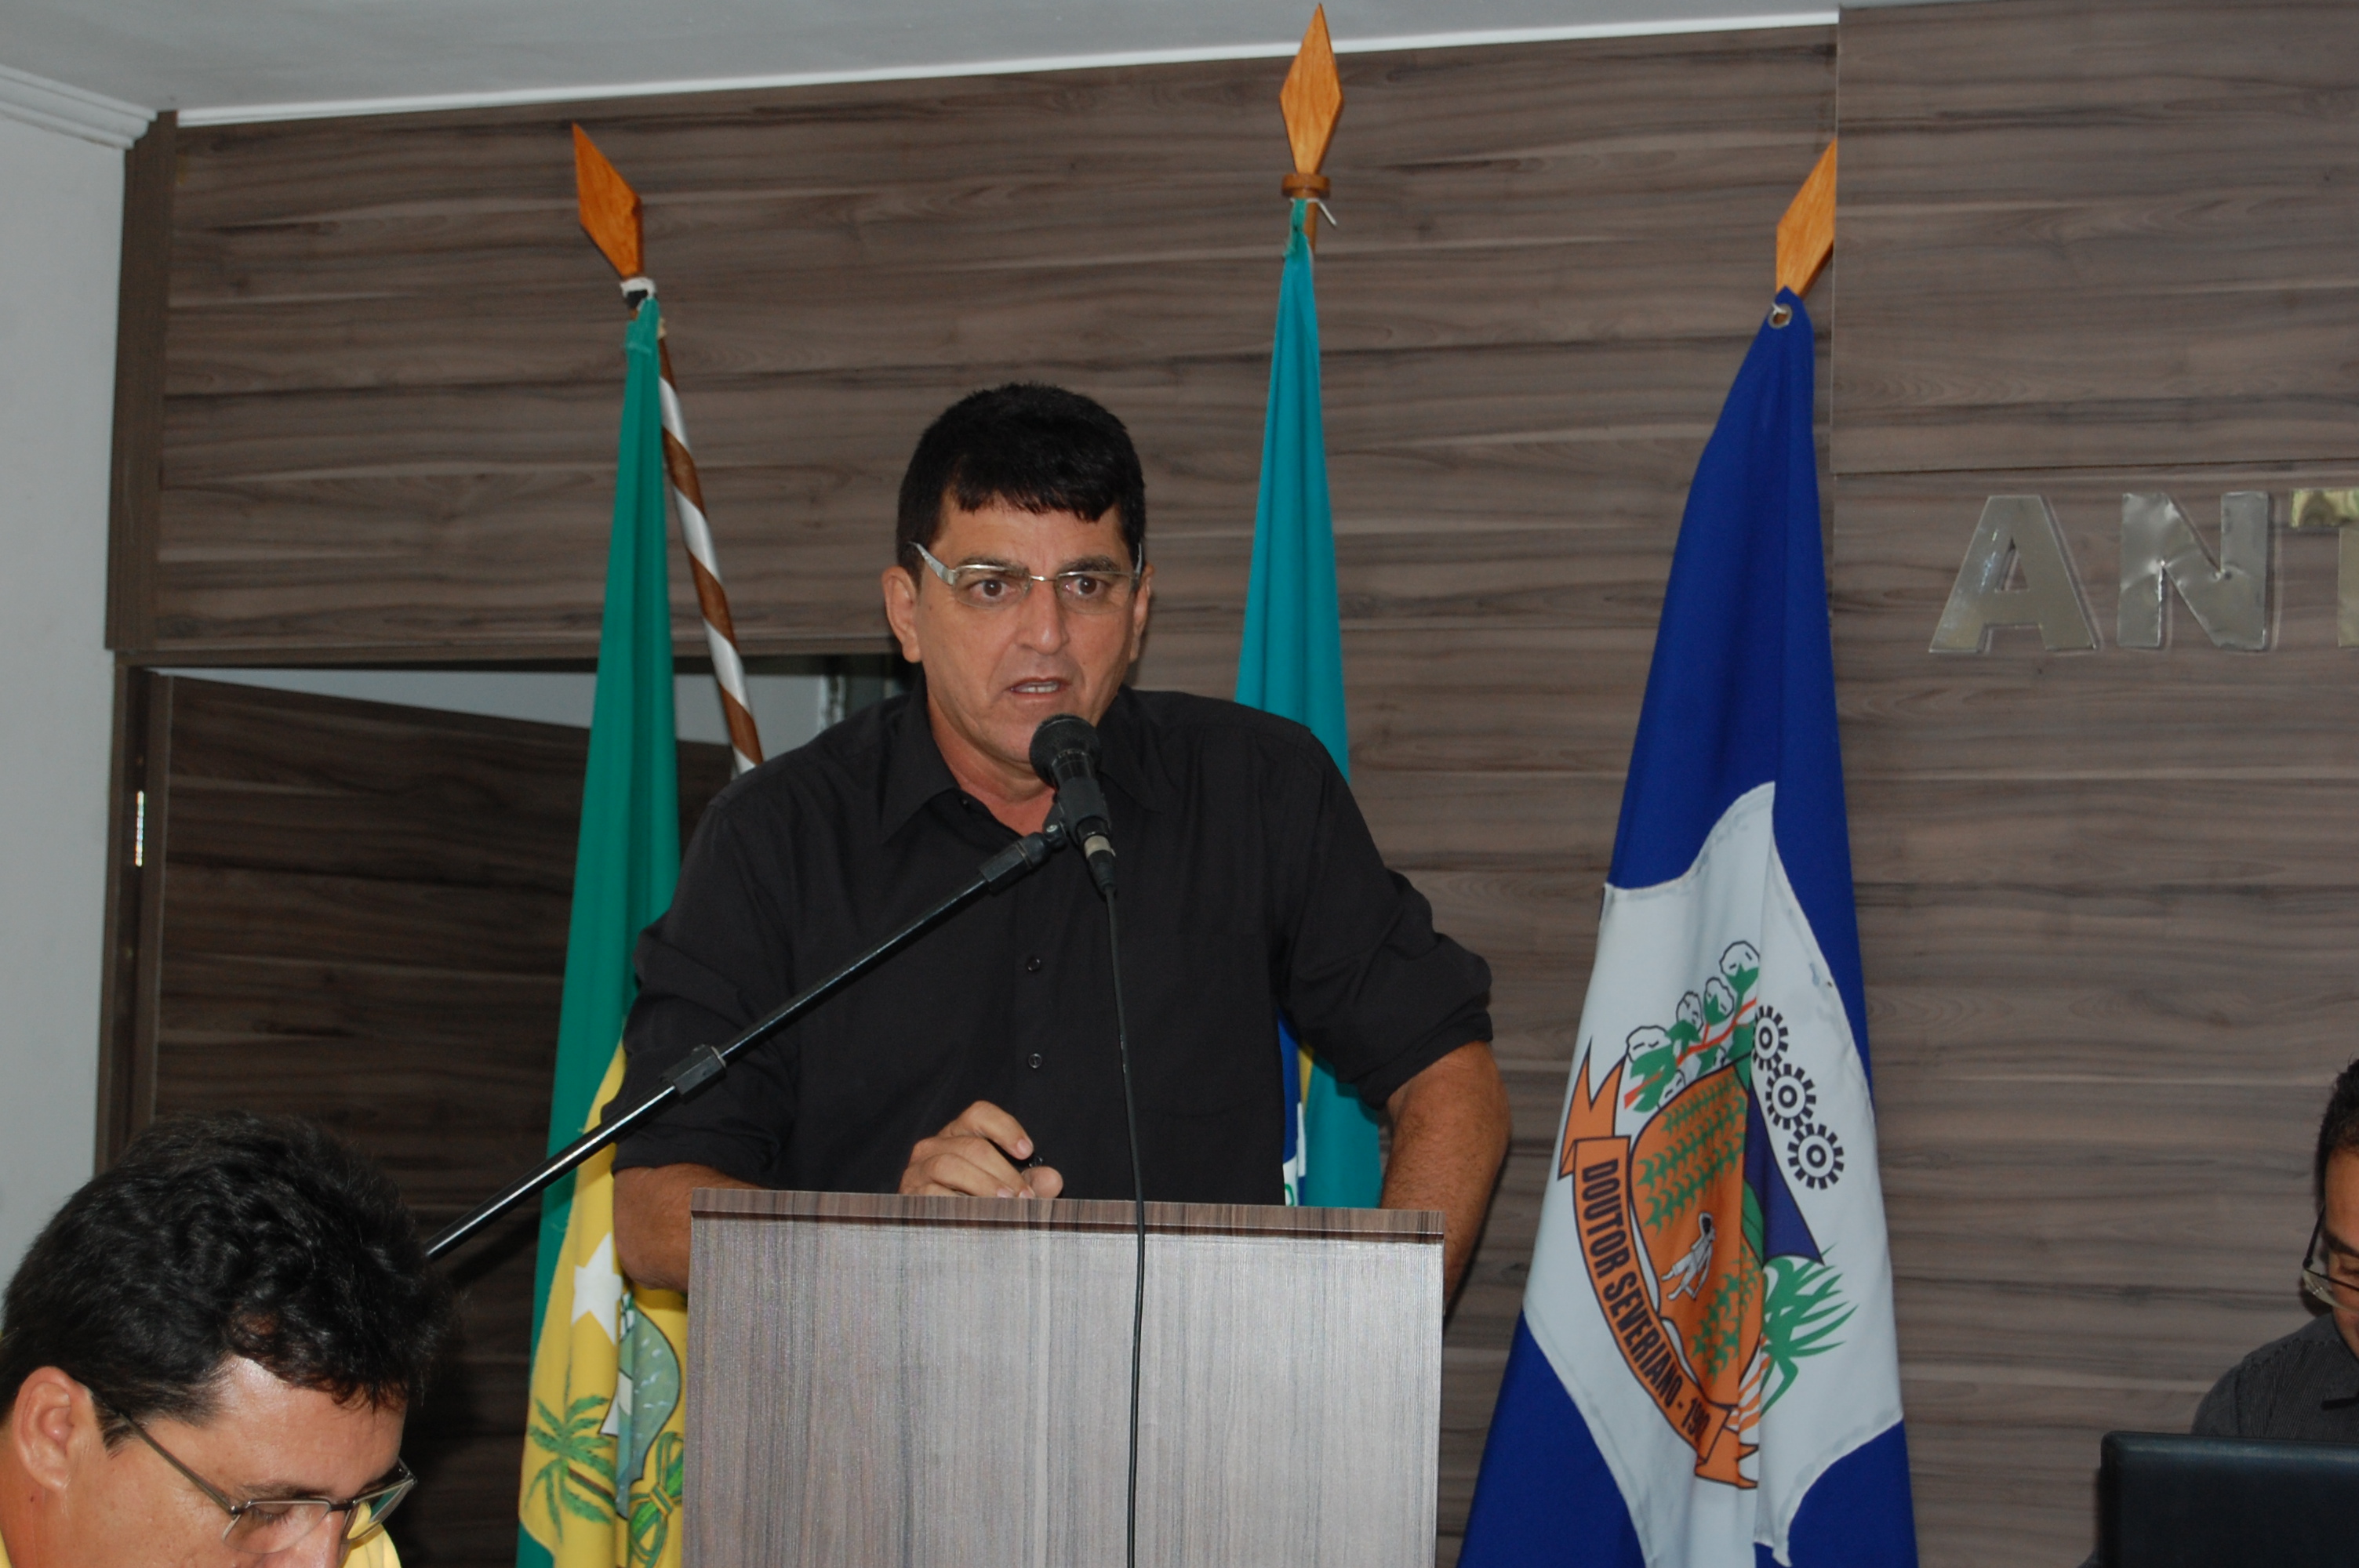 O Vereador Flavianildo Fernandes apresentou Requerimento nº. 002/2017